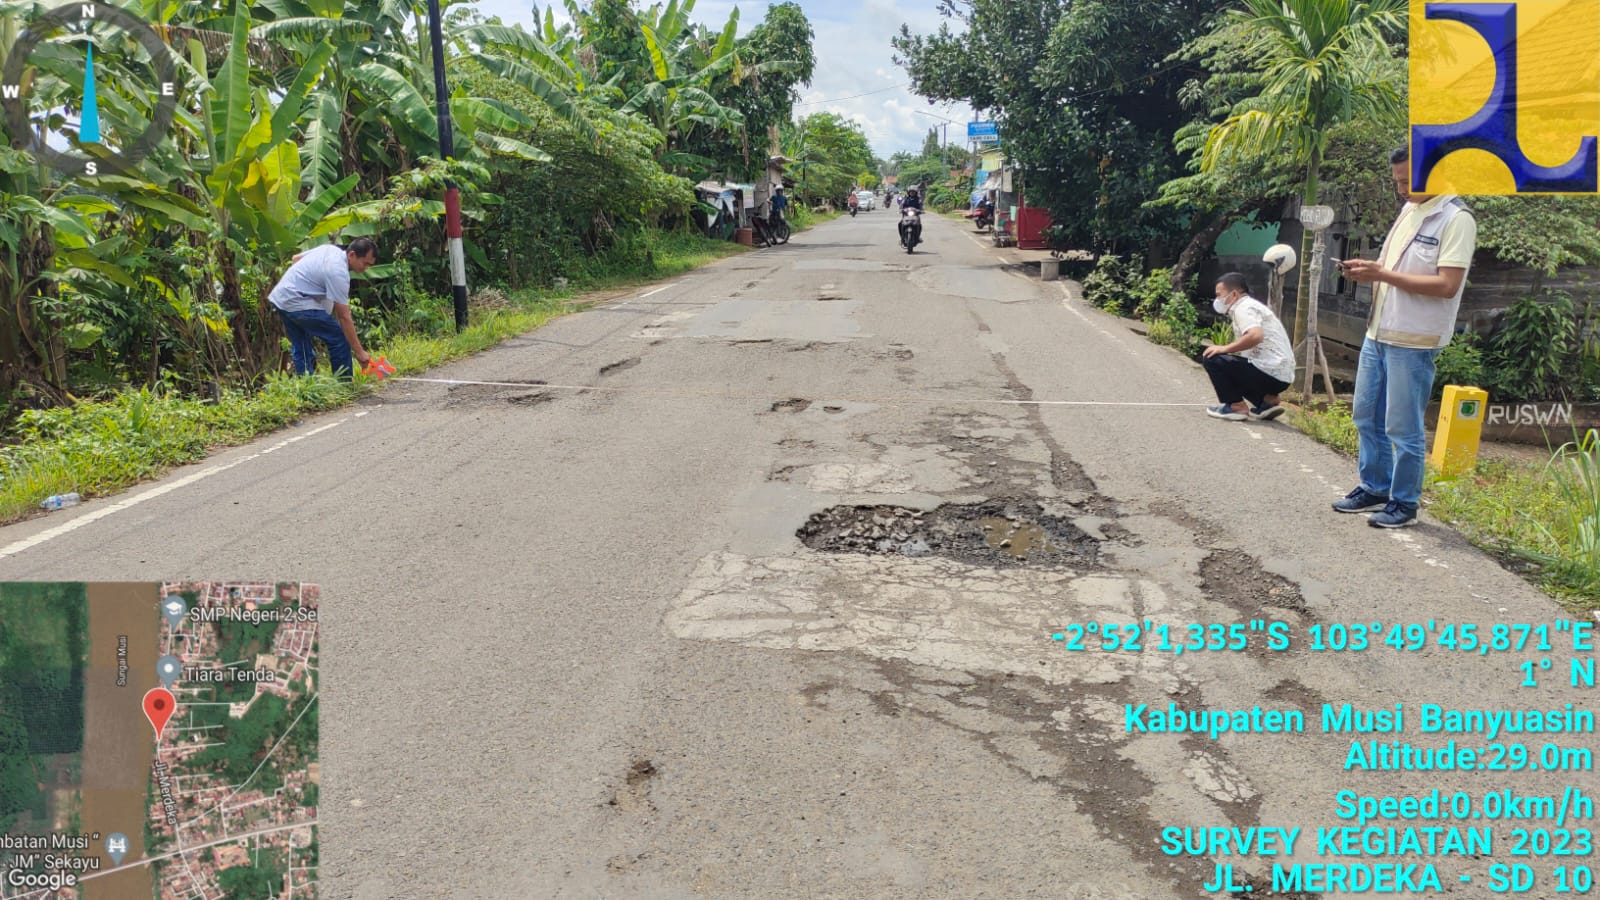 Pj Bupati Muba: Anggaran 8M Untuk Perbaikan Jalan di Sekayu dalam Proses Lelang